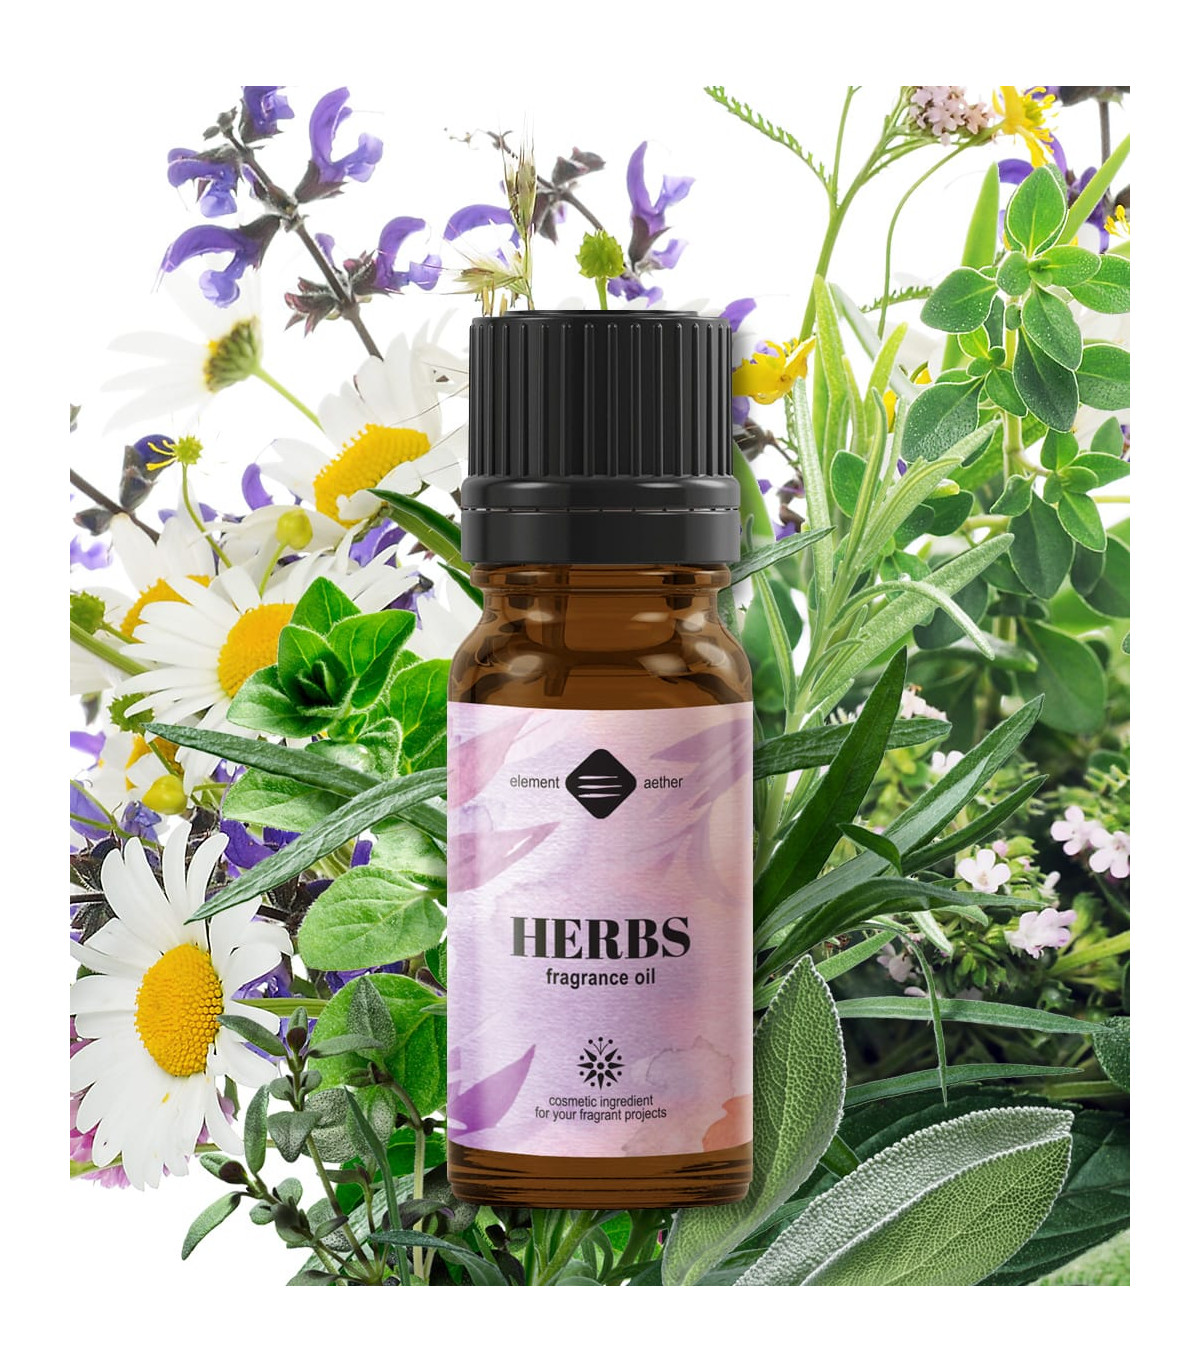 Herbs Fragrance oi